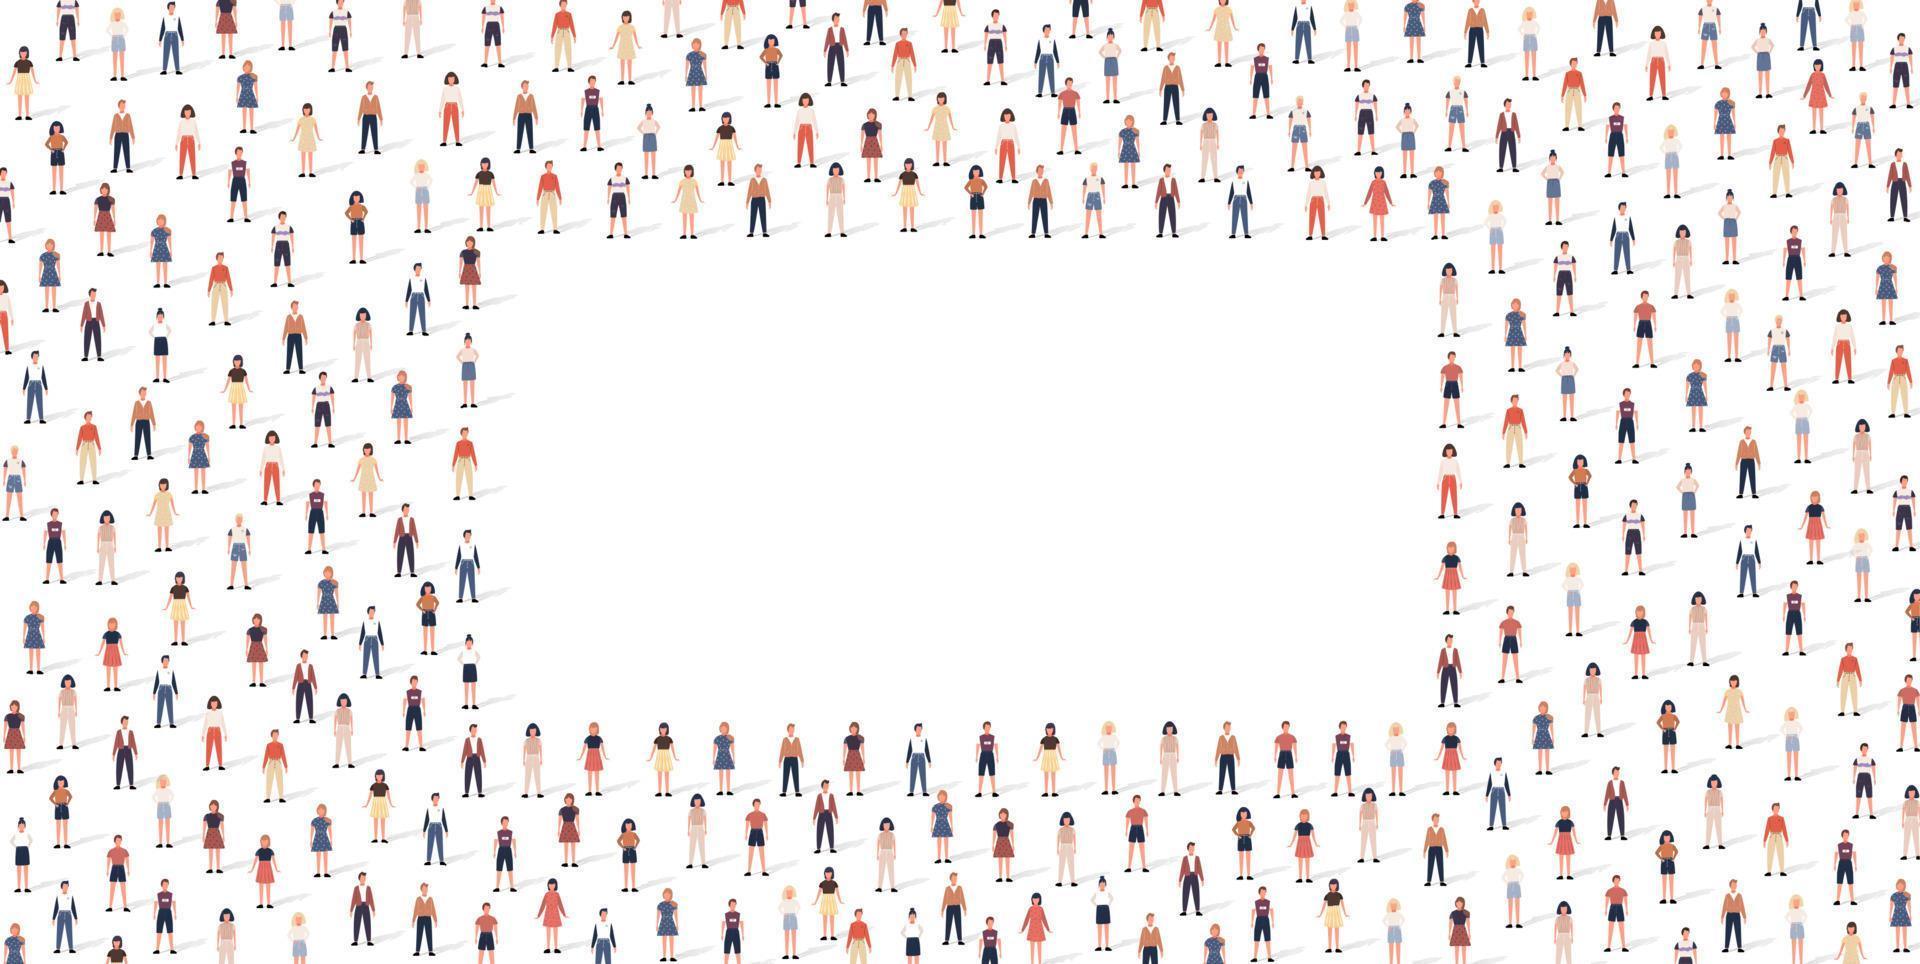 padrão de pessoas multidão definido em estilo simples. ilustração vetorial homens e mulheres isolados no fundo branco vetor